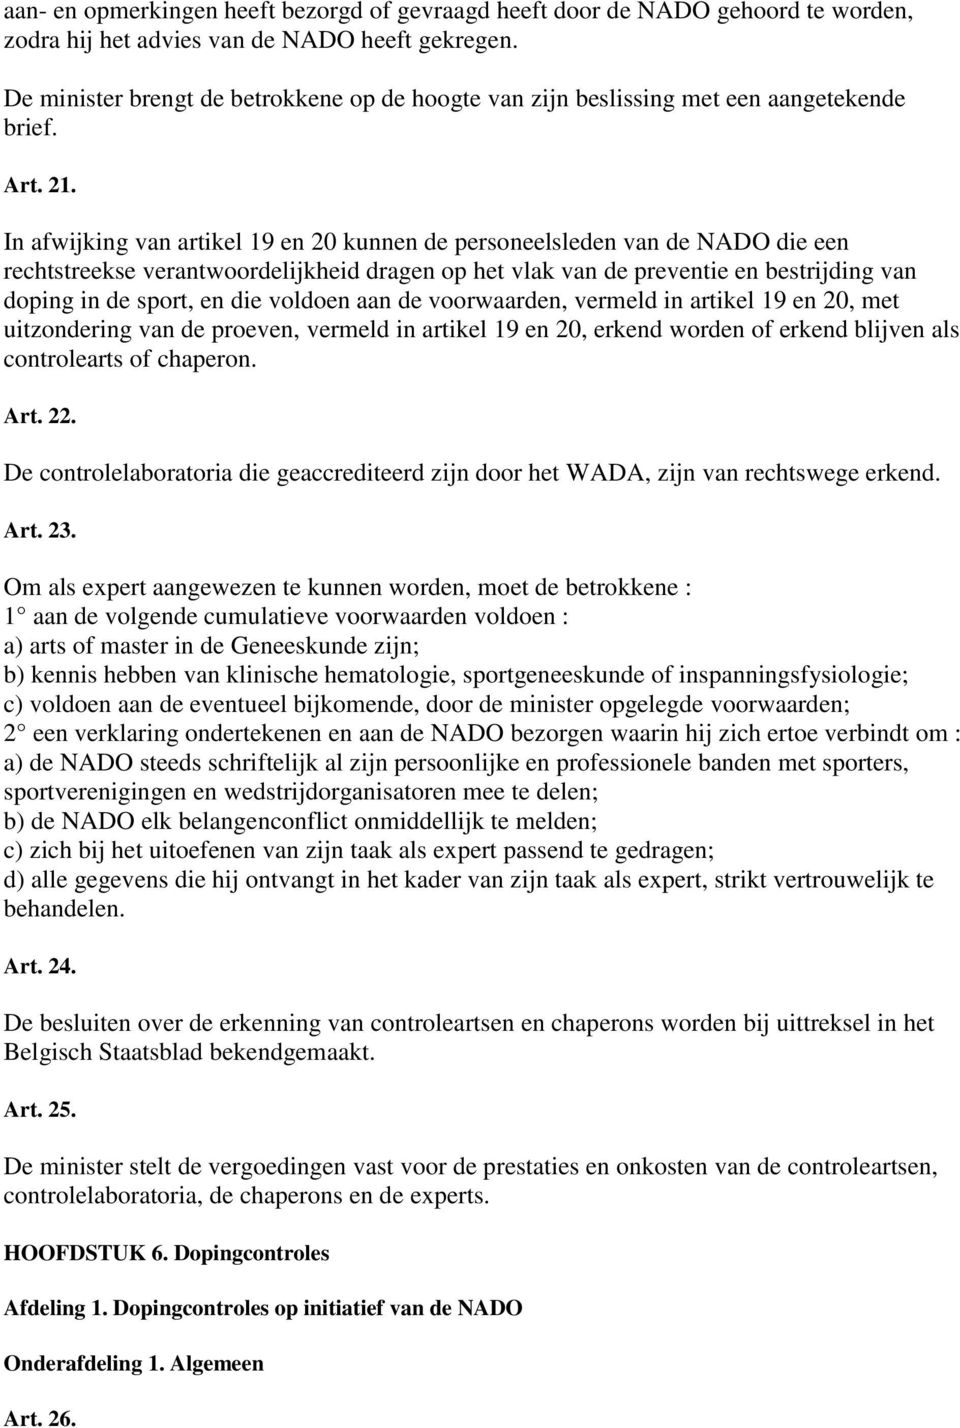 In afwijking van artikel 19 en 20 kunnen de personeelsleden van de NADO die een rechtstreekse verantwoordelijkheid dragen op het vlak van de preventie en bestrijding van doping in de sport, en die